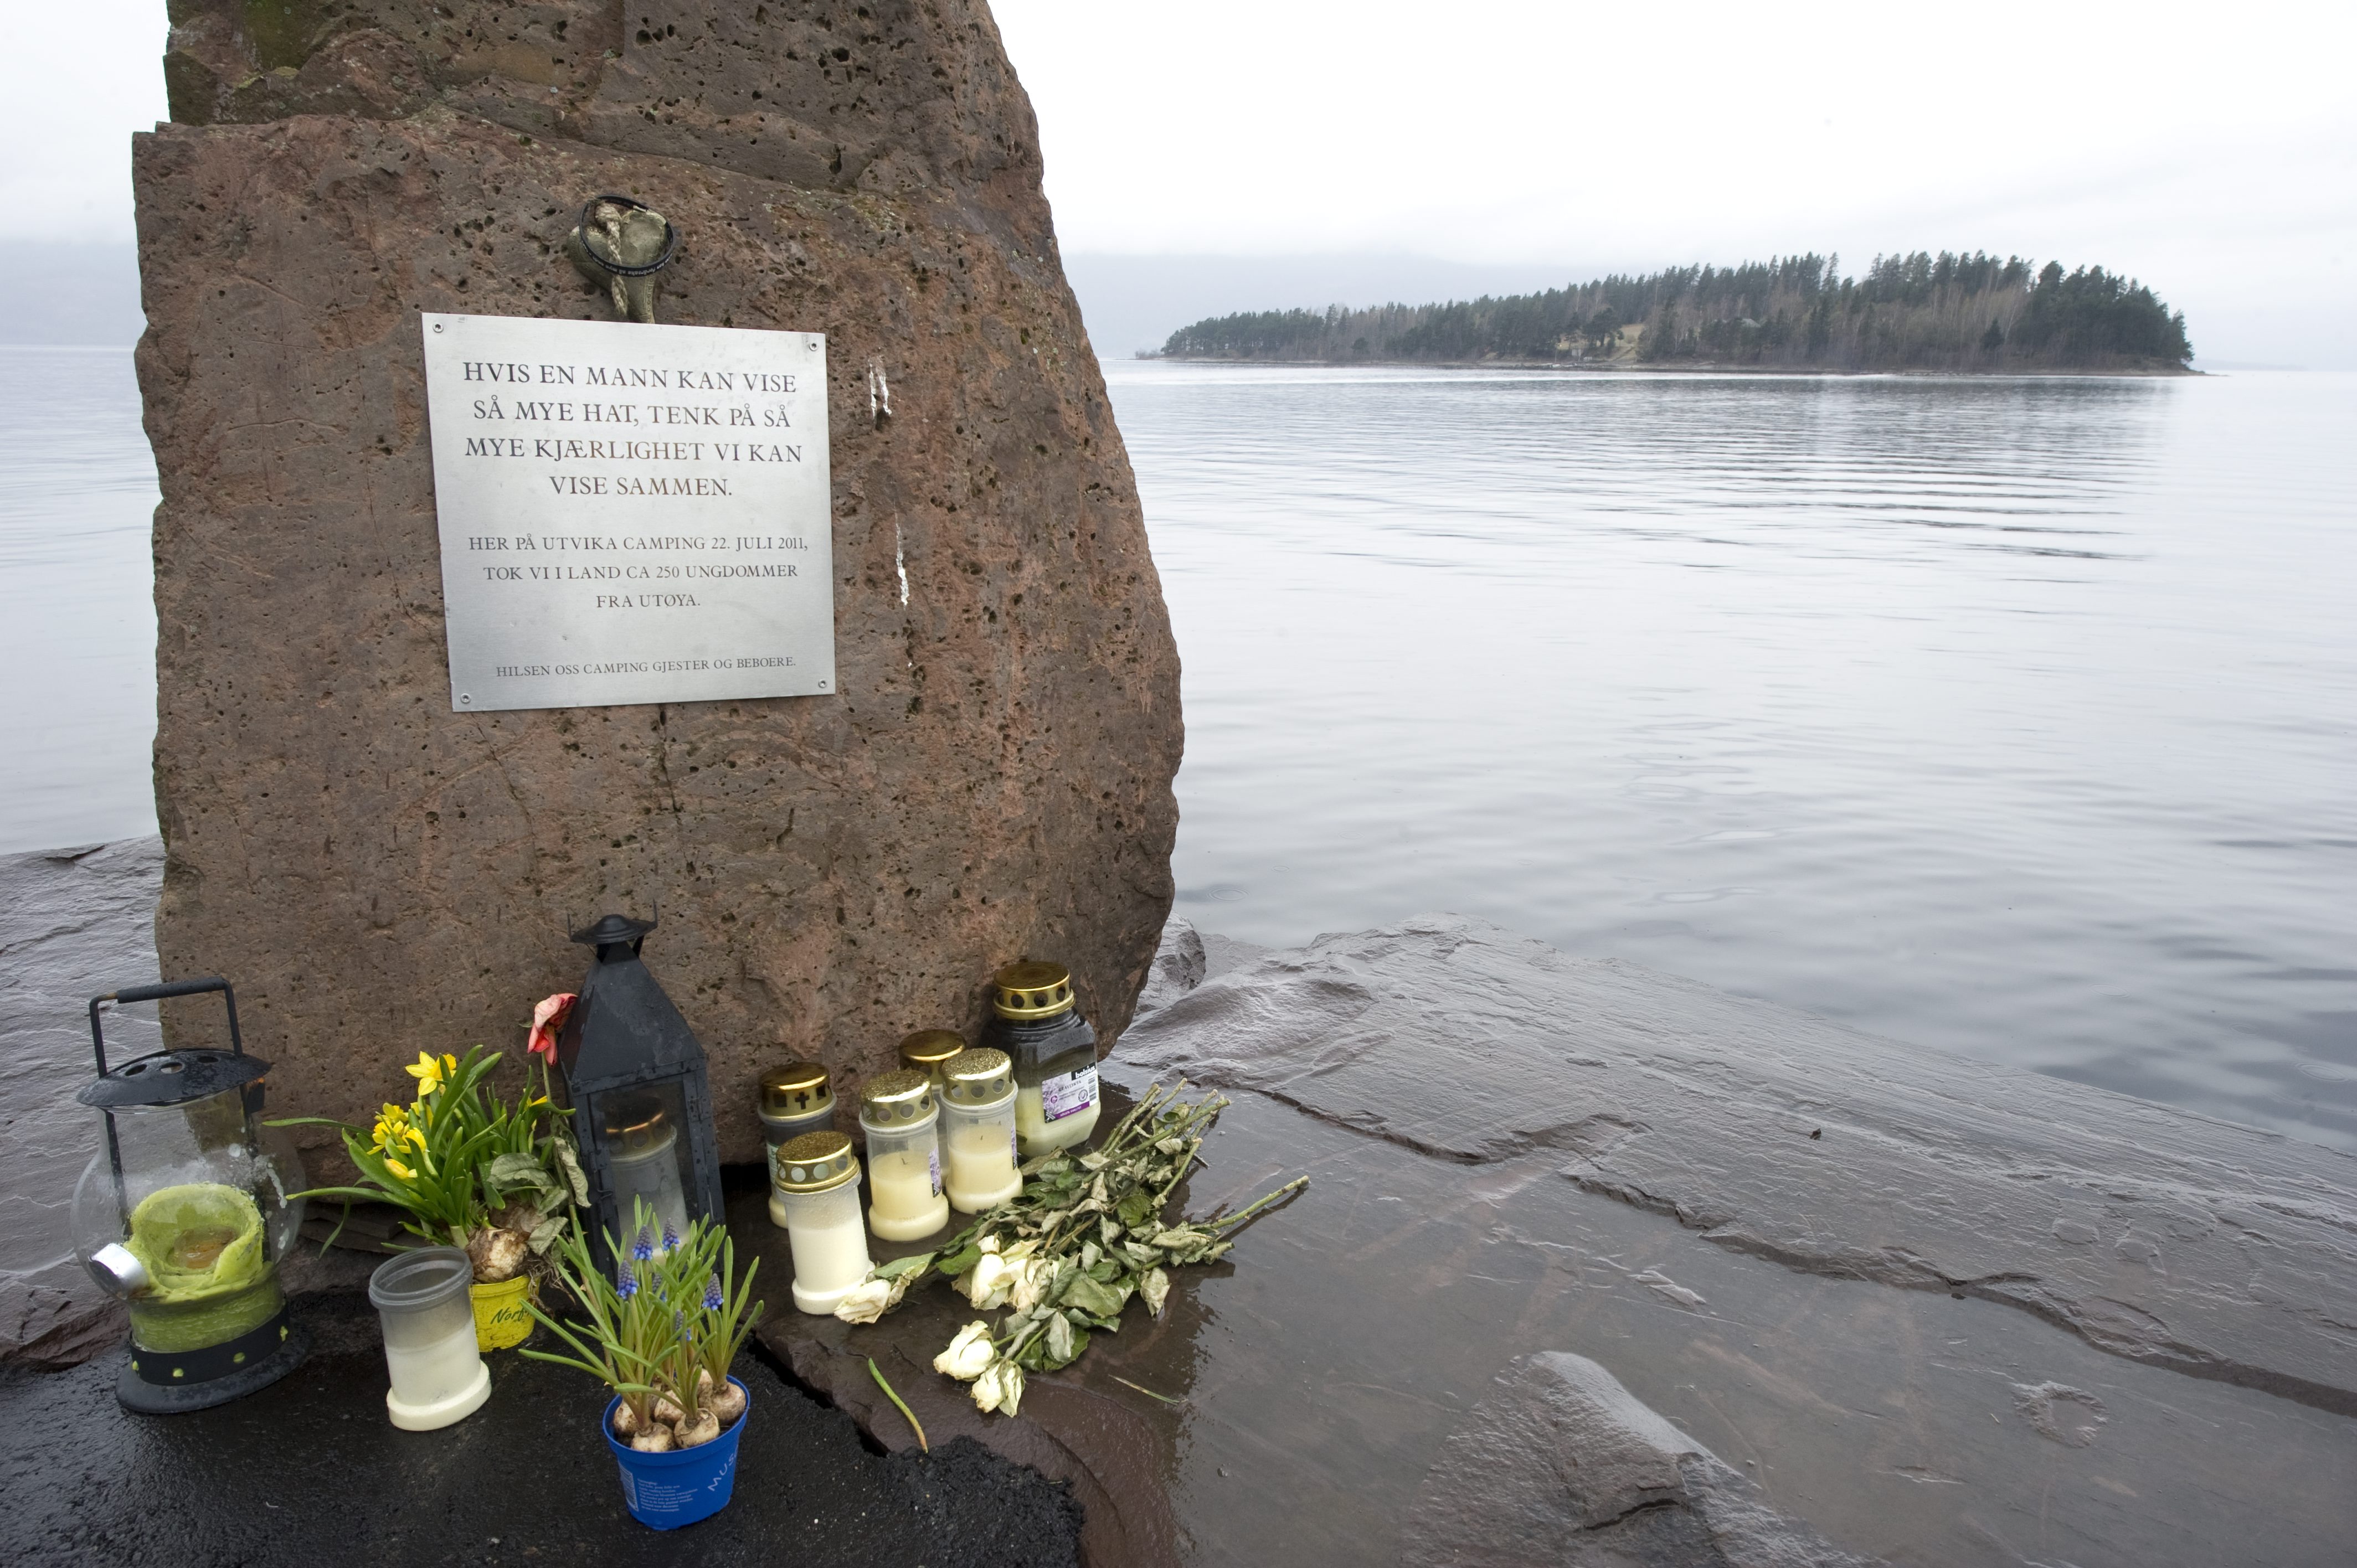 Rättegång, Skottlossning, Anders Behring Breivik, Vittnesmål, Norge, Terrordåd, Utøya, Oslo, Massmördare